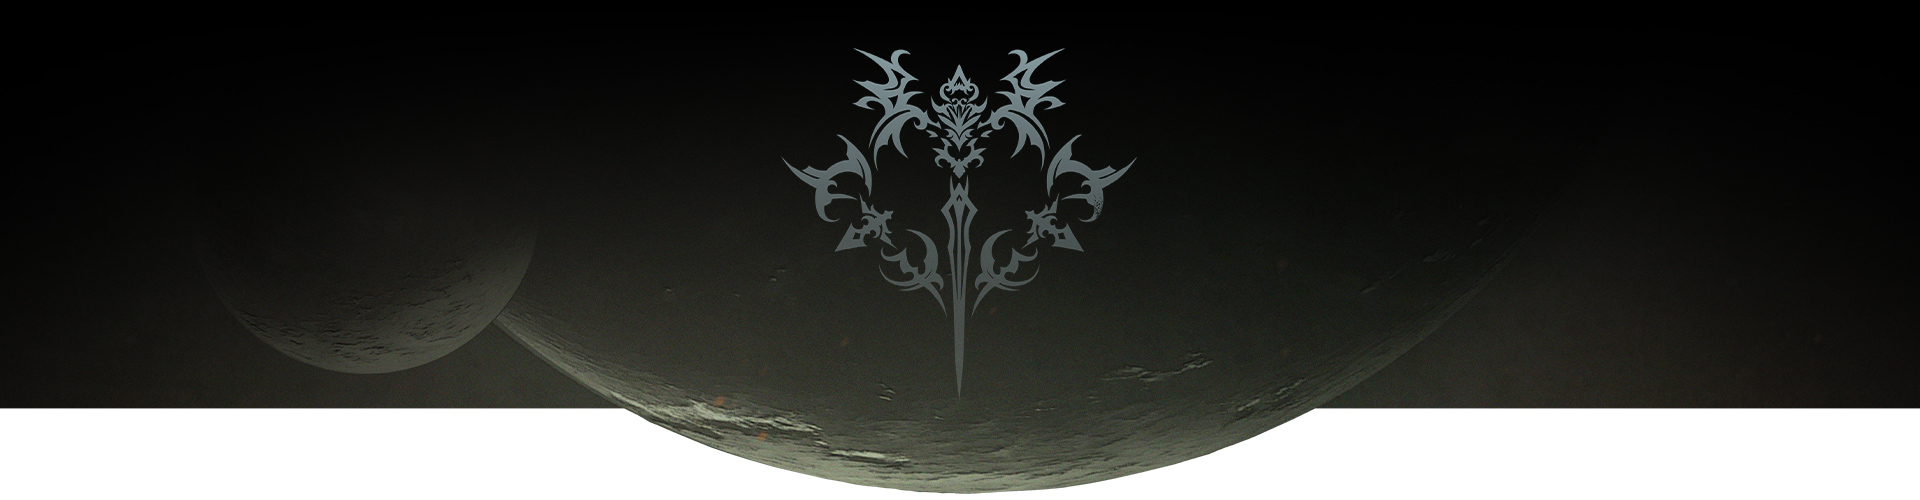 Suuri ja pieni kuu ja Tales of Arise -logo. 